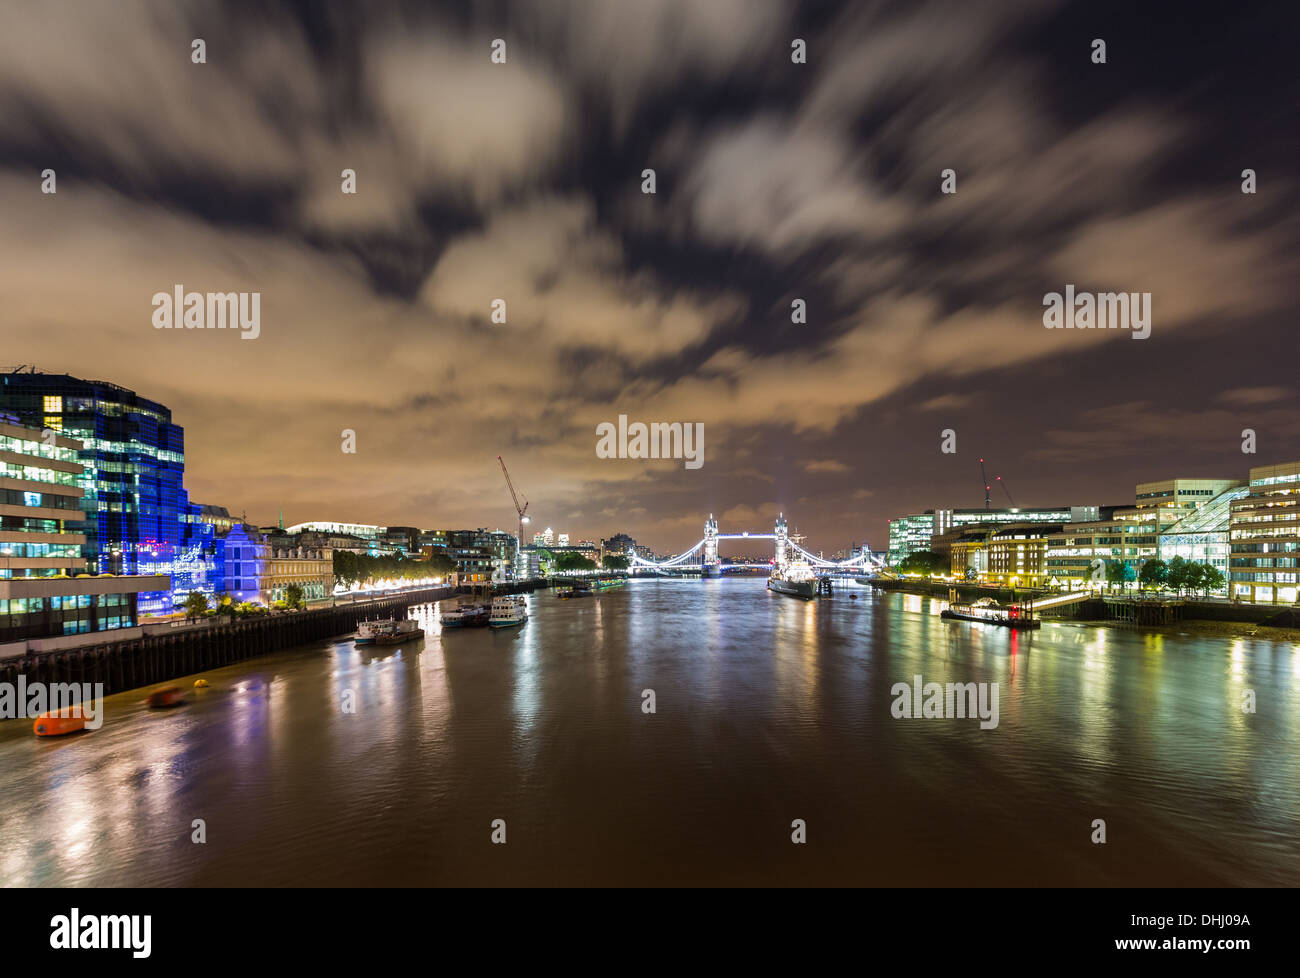 Vista del Río Támesis durante la noche mirando hacia el Tower Bridge, Londres, Reino Unido. Foto de stock